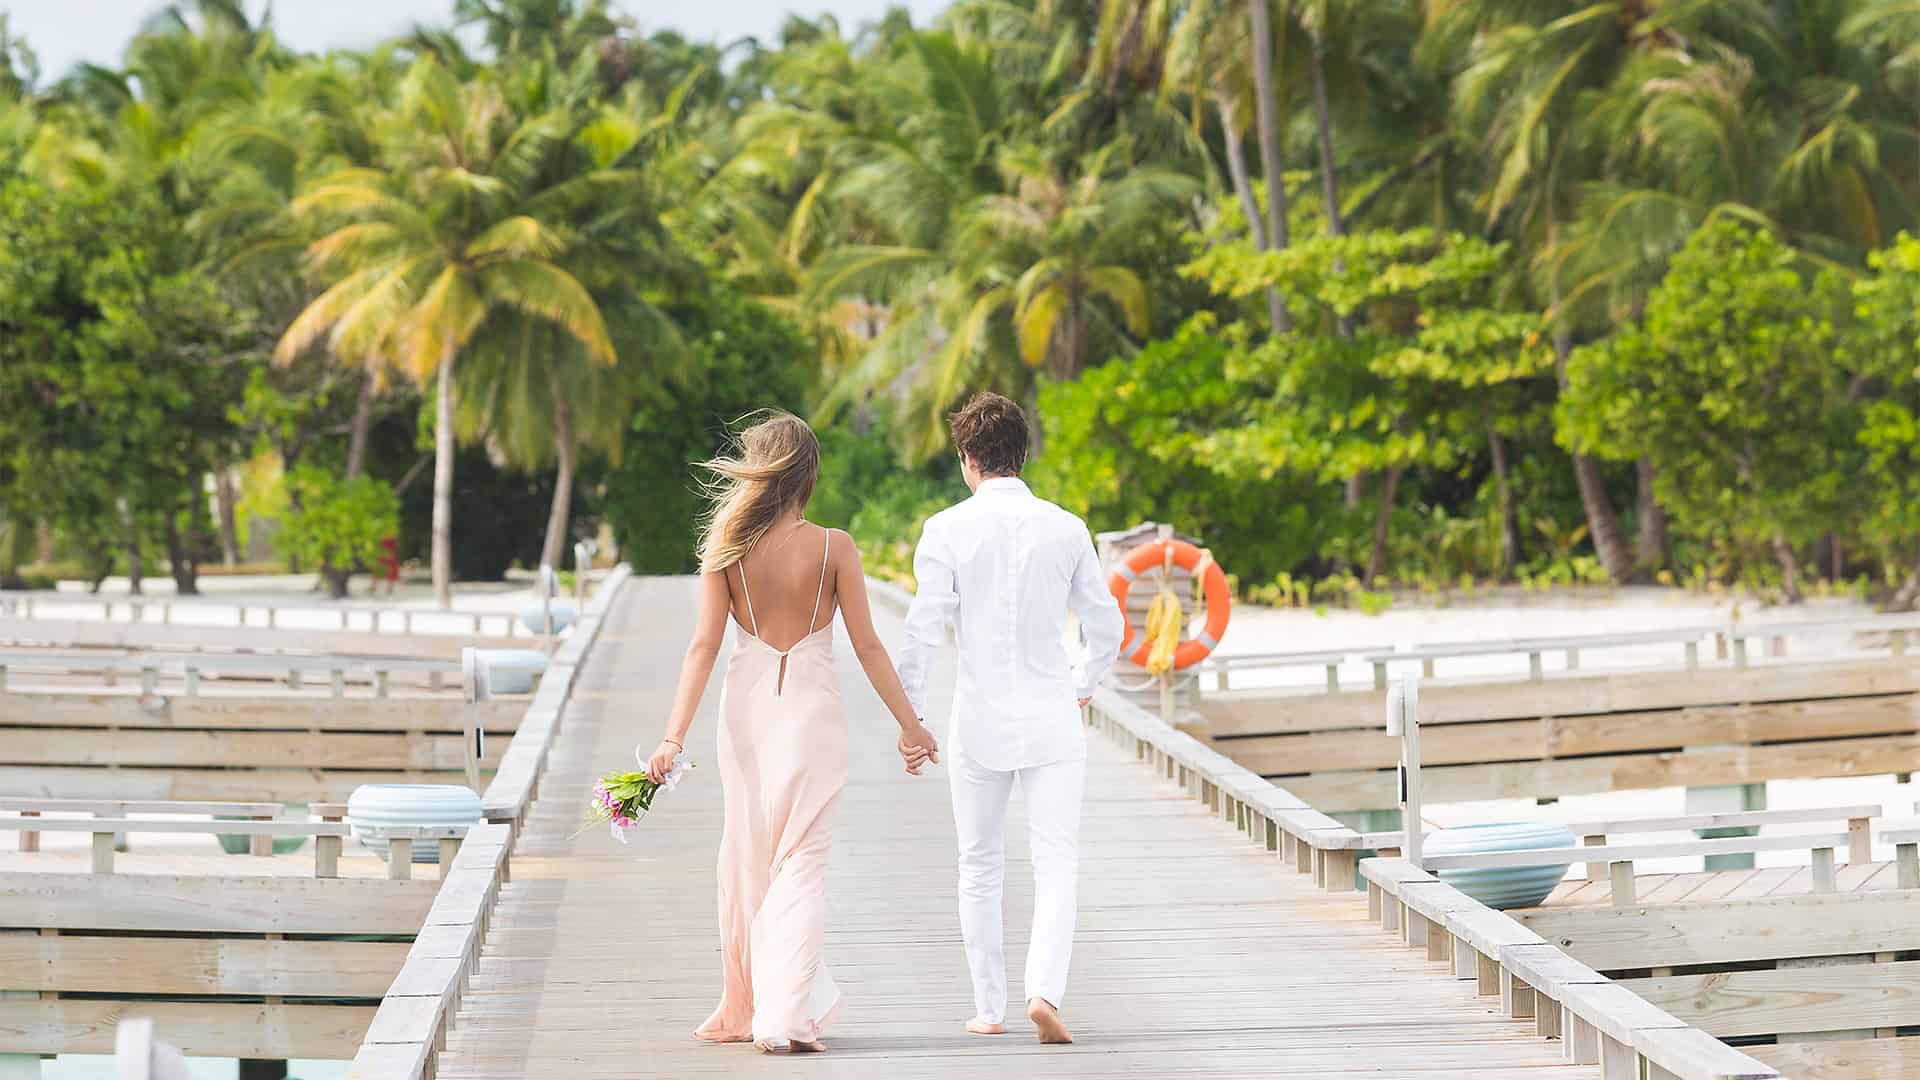 新娘和新郎手牵手走在棕榈树成荫的海滩上的婚礼走道上。